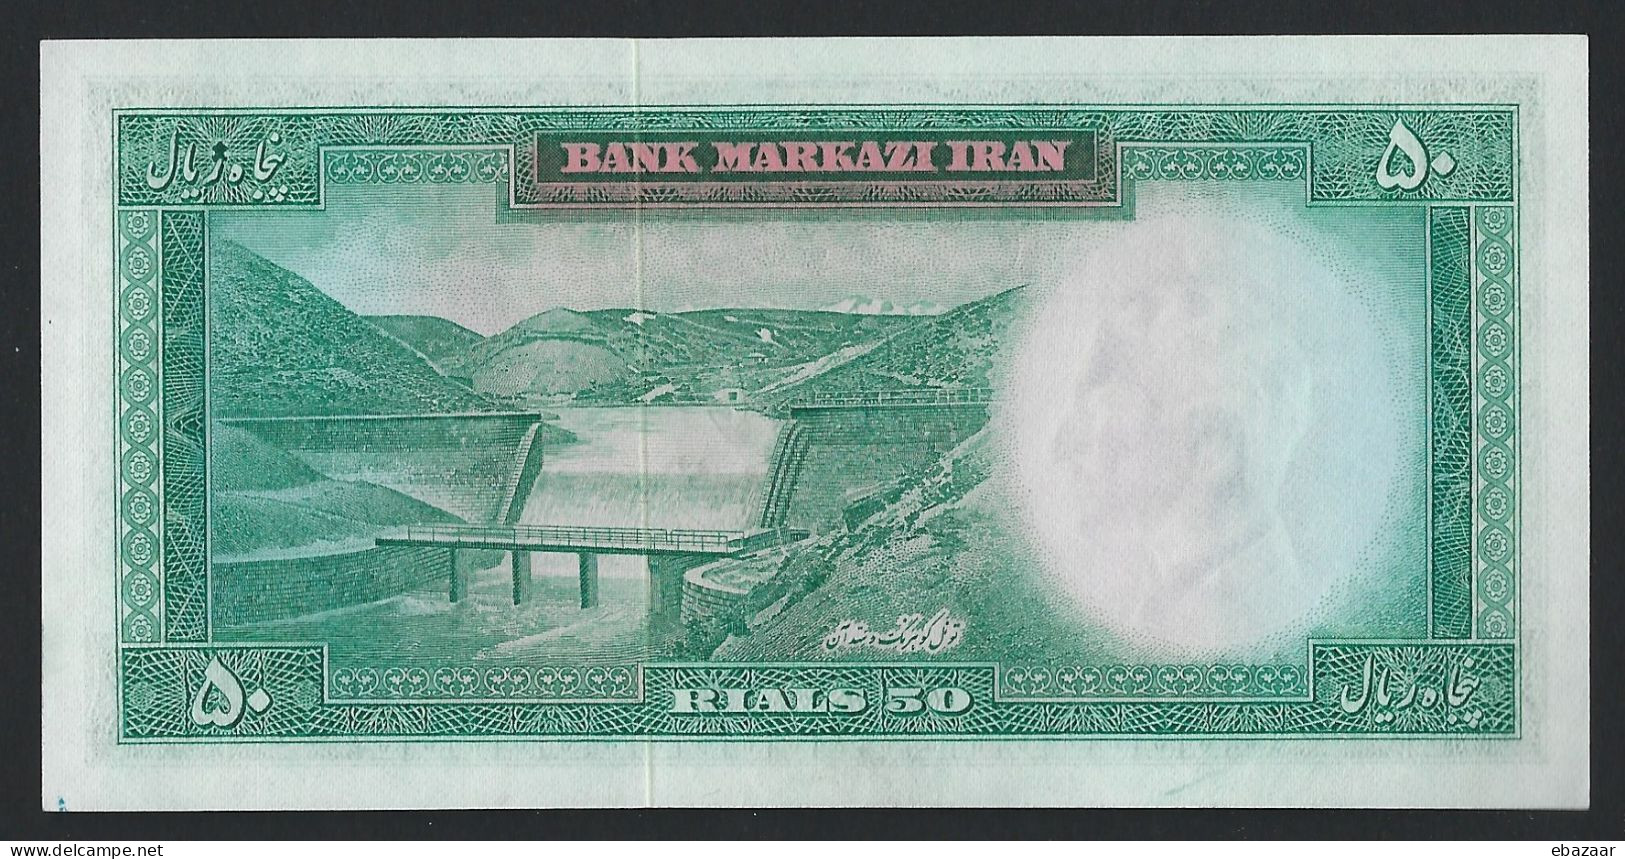 Iran 1971 (Bank Markazi Iran) 50 Rials Banknote P-90 Serial #200/155552 UNC - Iran